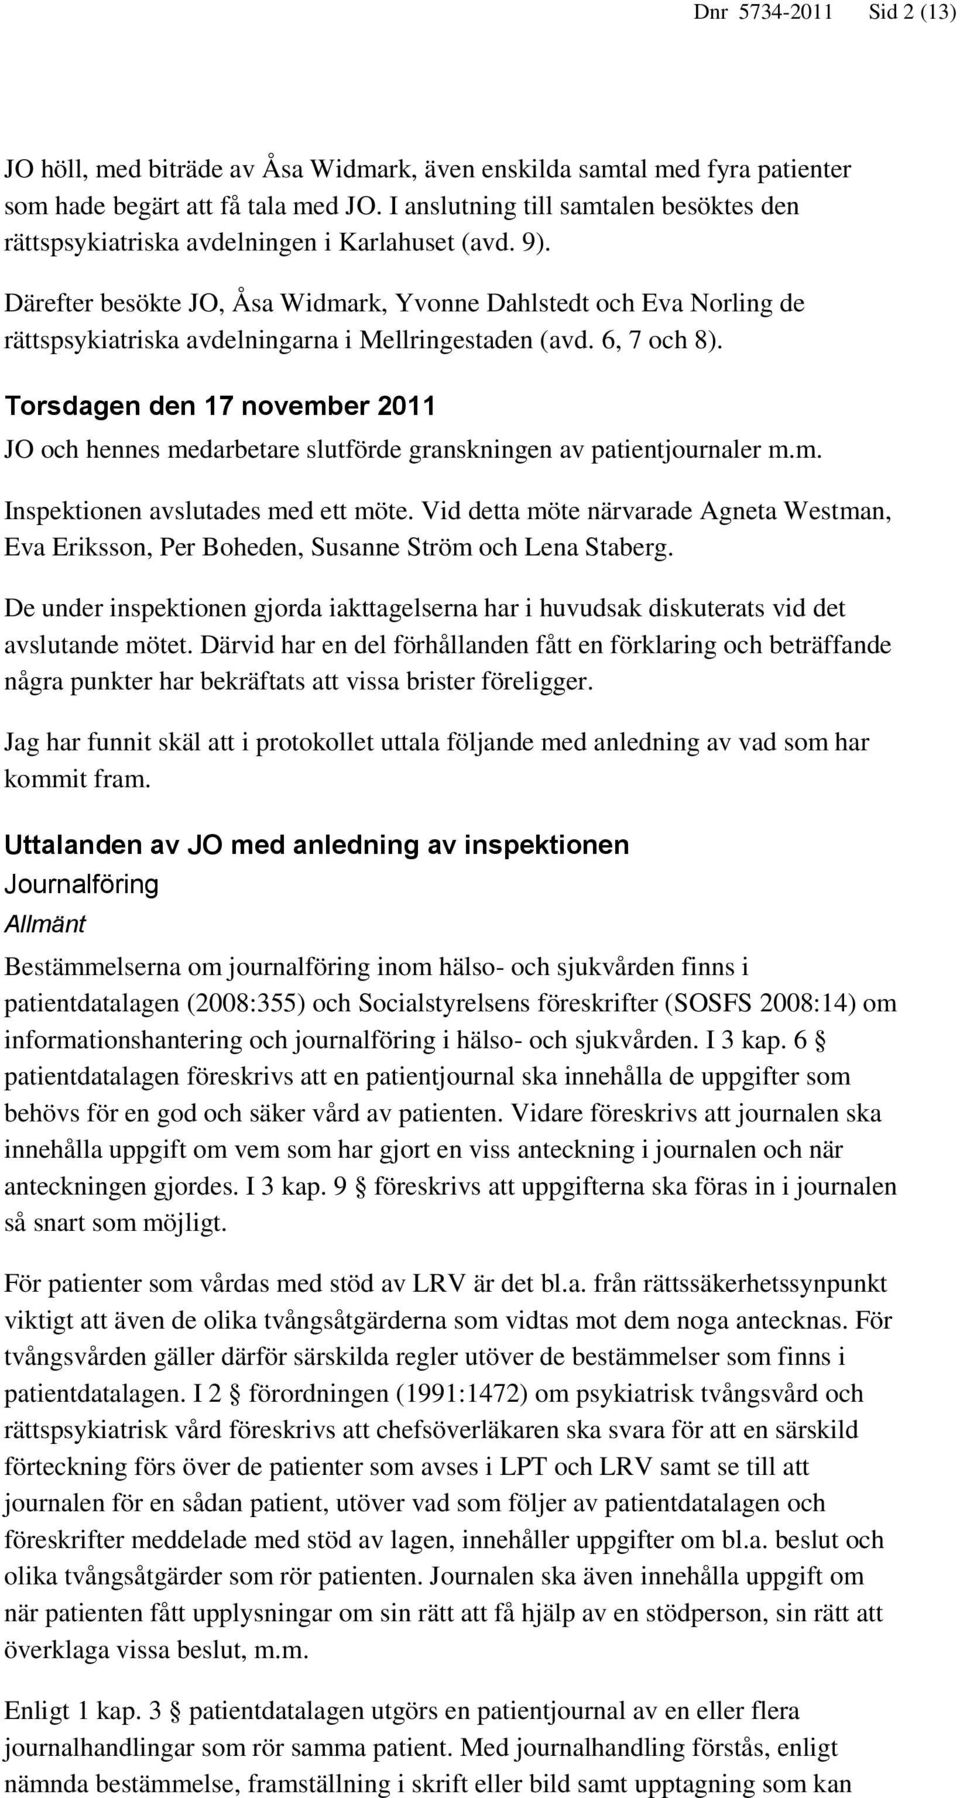 Därefter besökte JO, Åsa Widmark, Yvonne Dahlstedt och Eva Norling de rättspsykiatriska avdelningarna i Mellringestaden (avd. 6, 7 och 8).